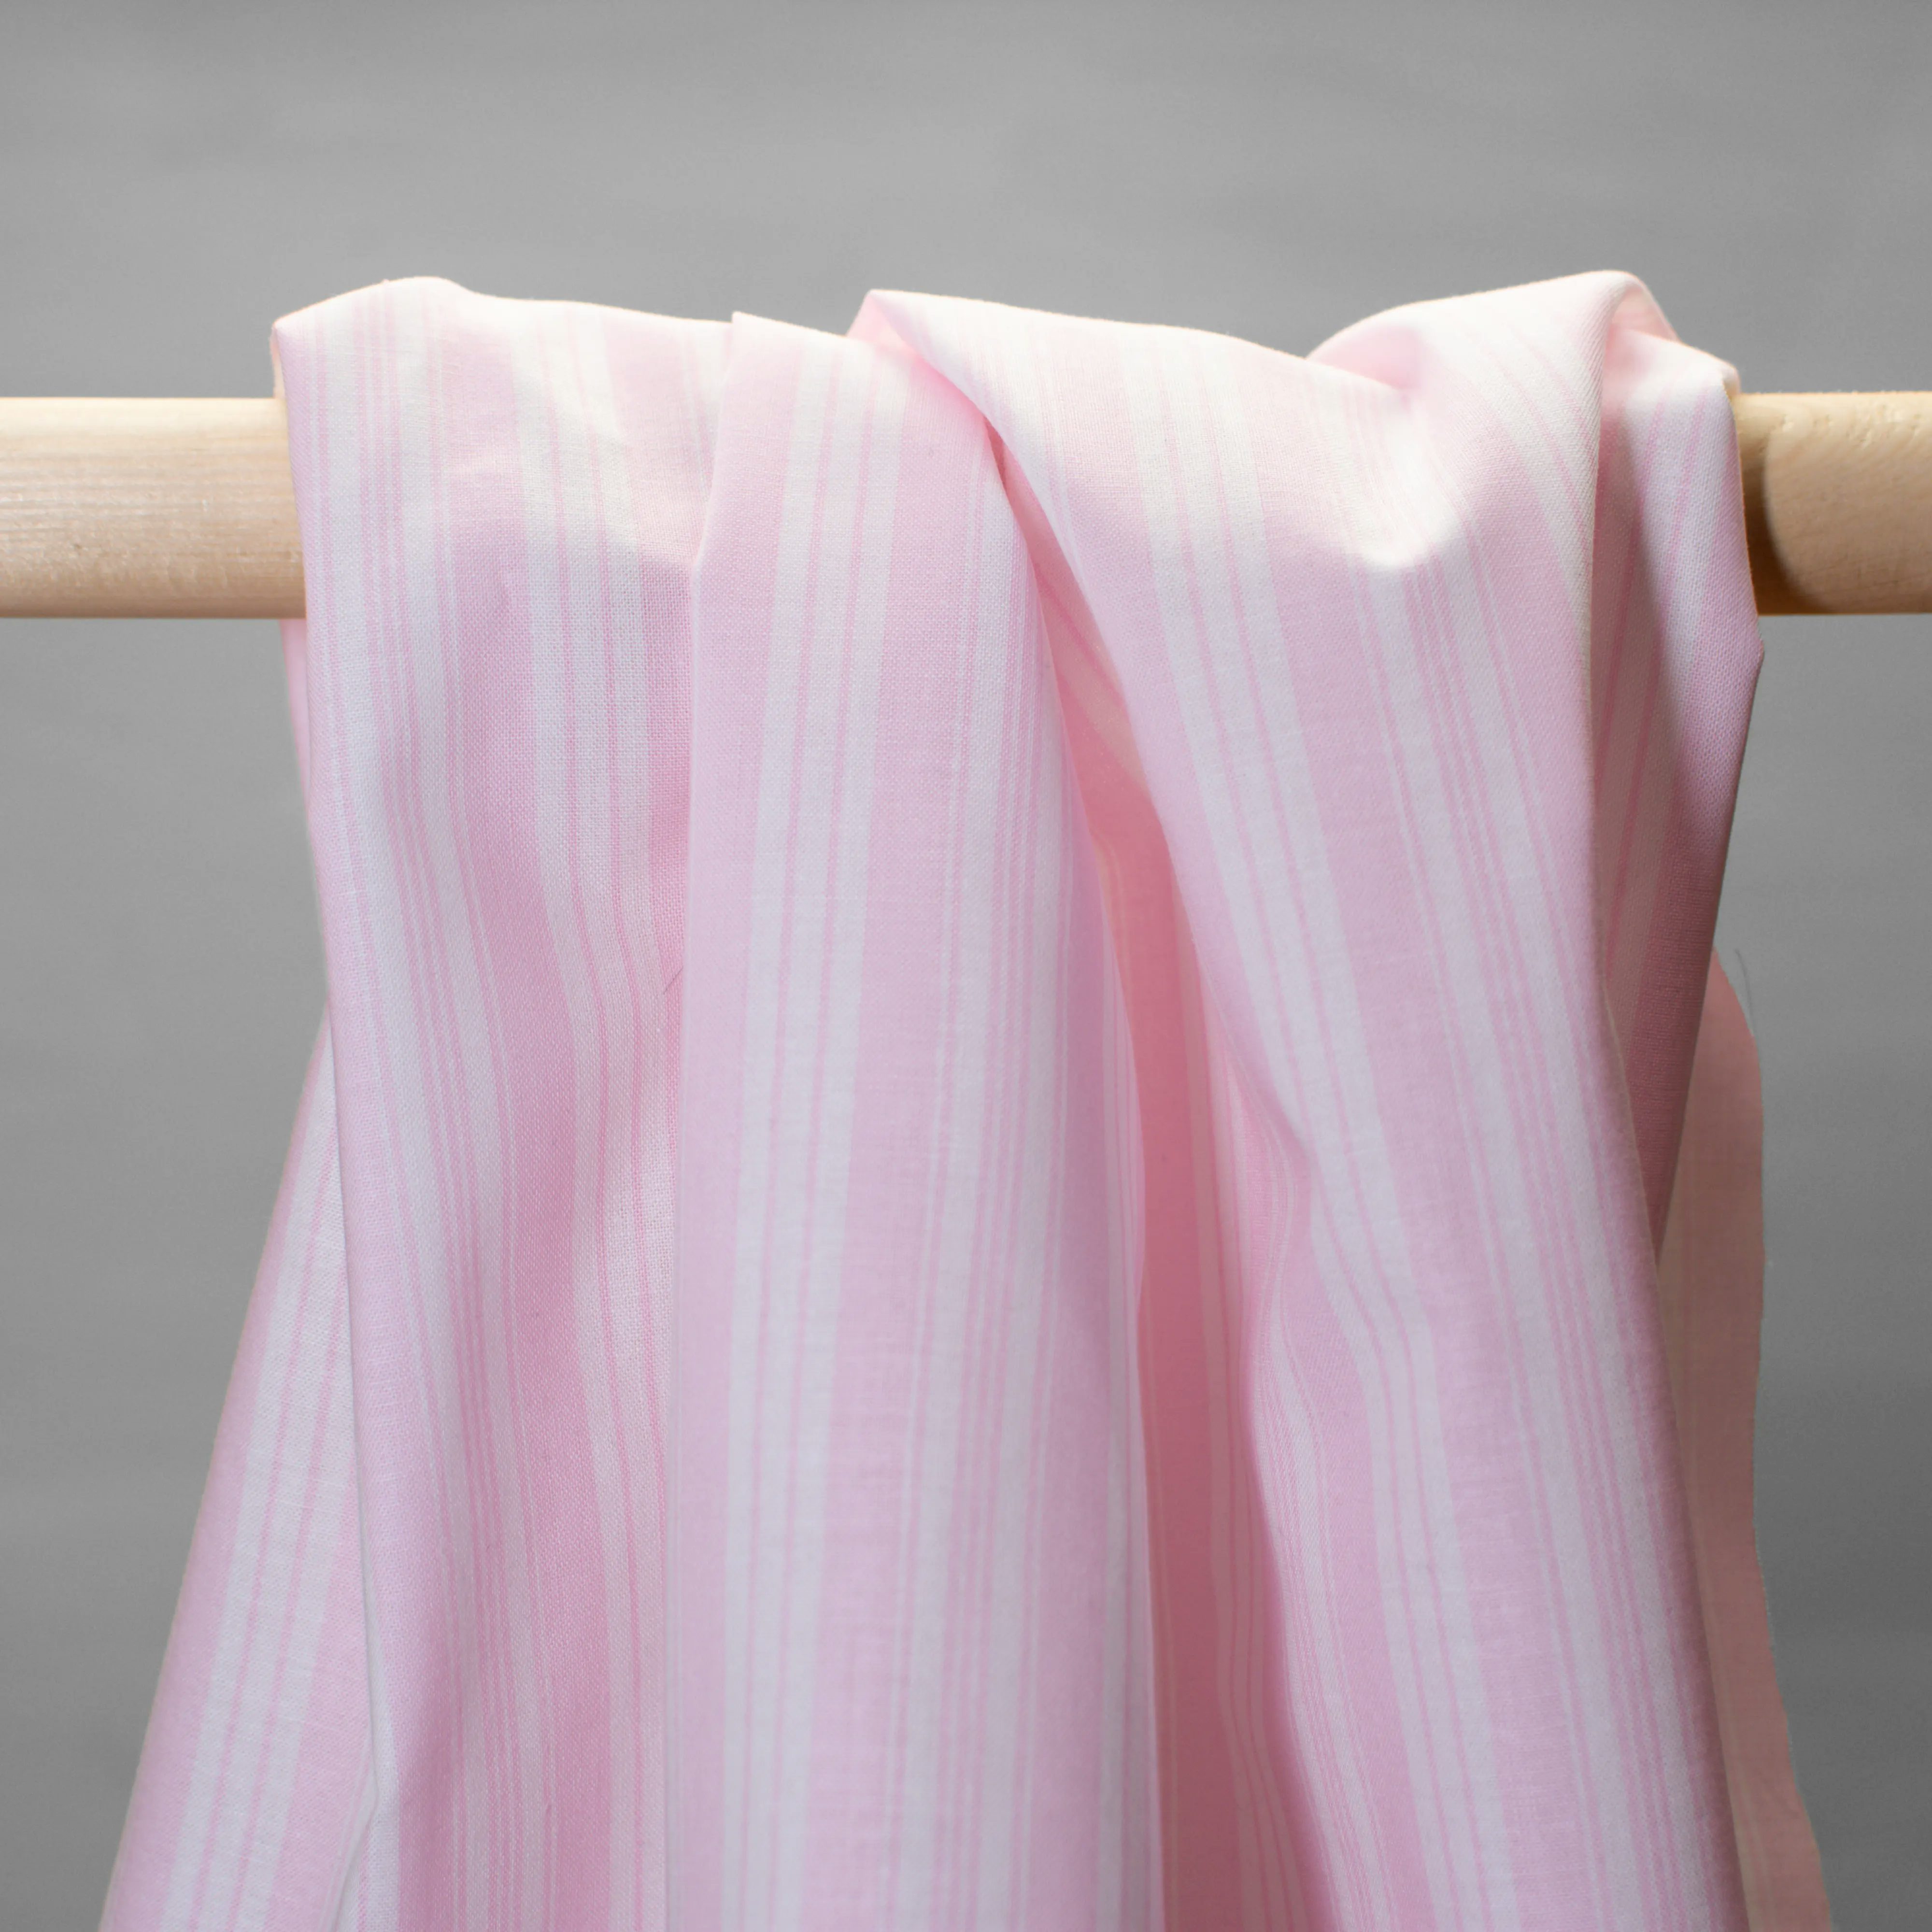 Cotton - Lawn - Stripes Light Pink